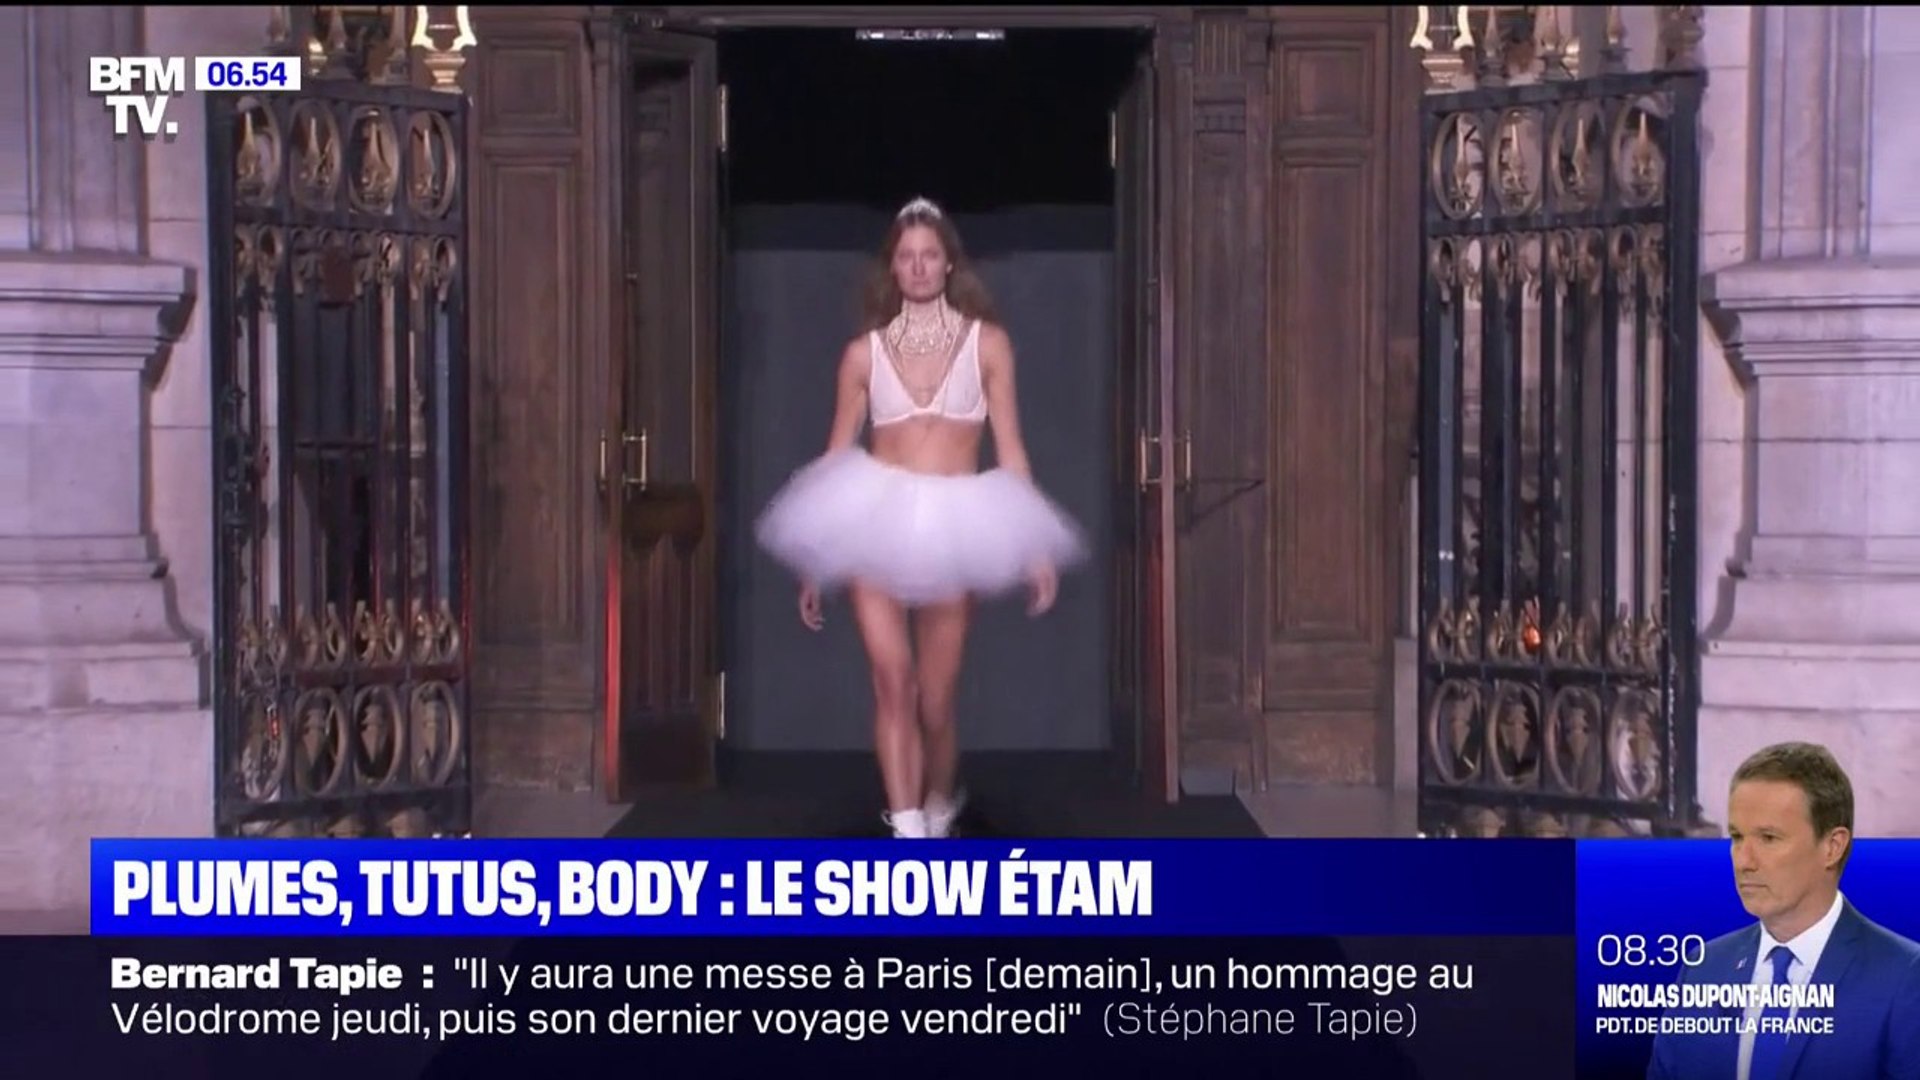 Le défilé d'Etam lingerie s'est tenu lundi soir à Paris - Vidéo Dailymotion